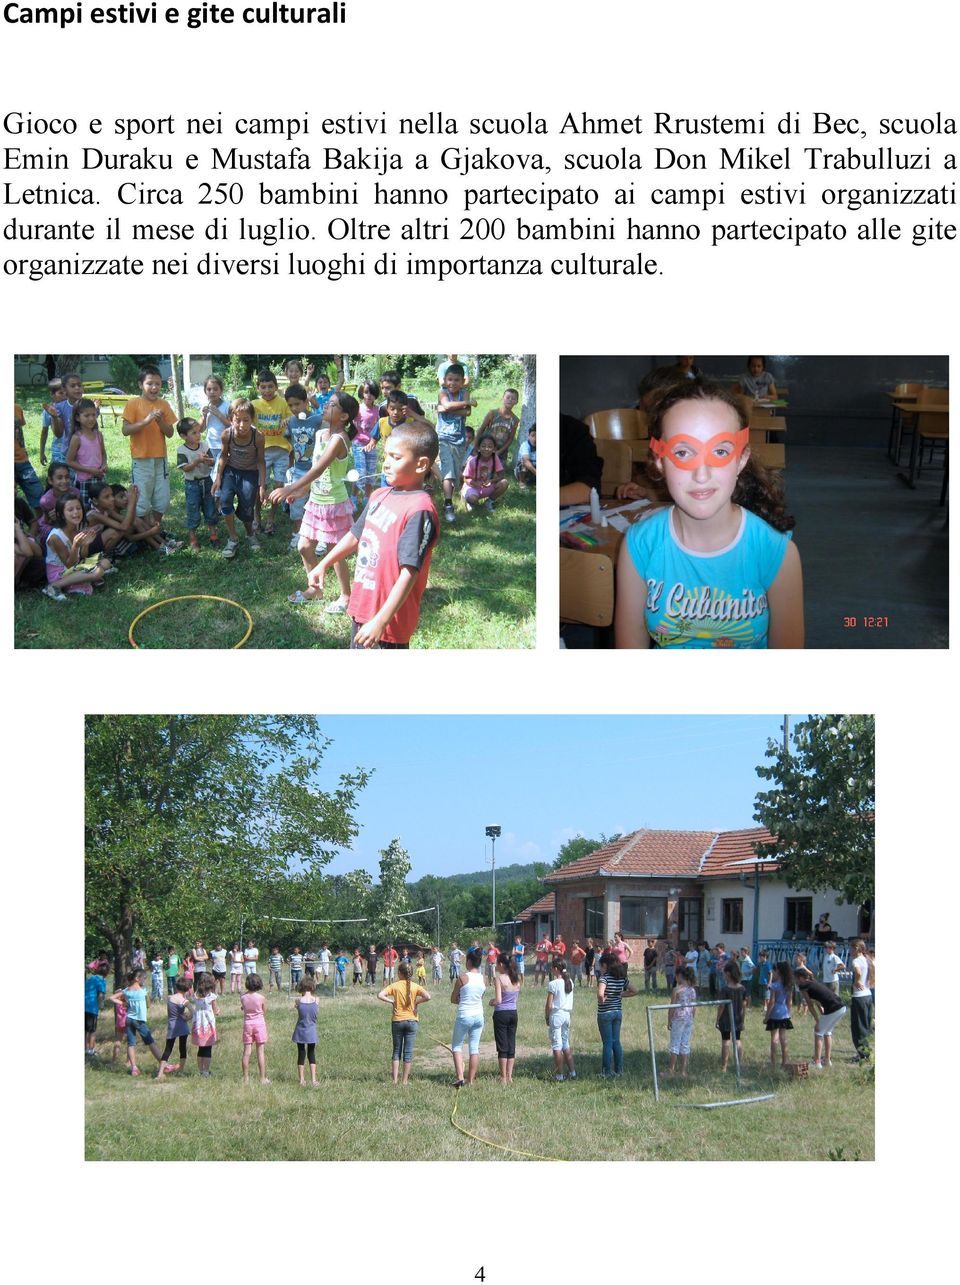 Circa 250 bambini hanno partecipato ai campi estivi organizzati durante il mese di luglio.